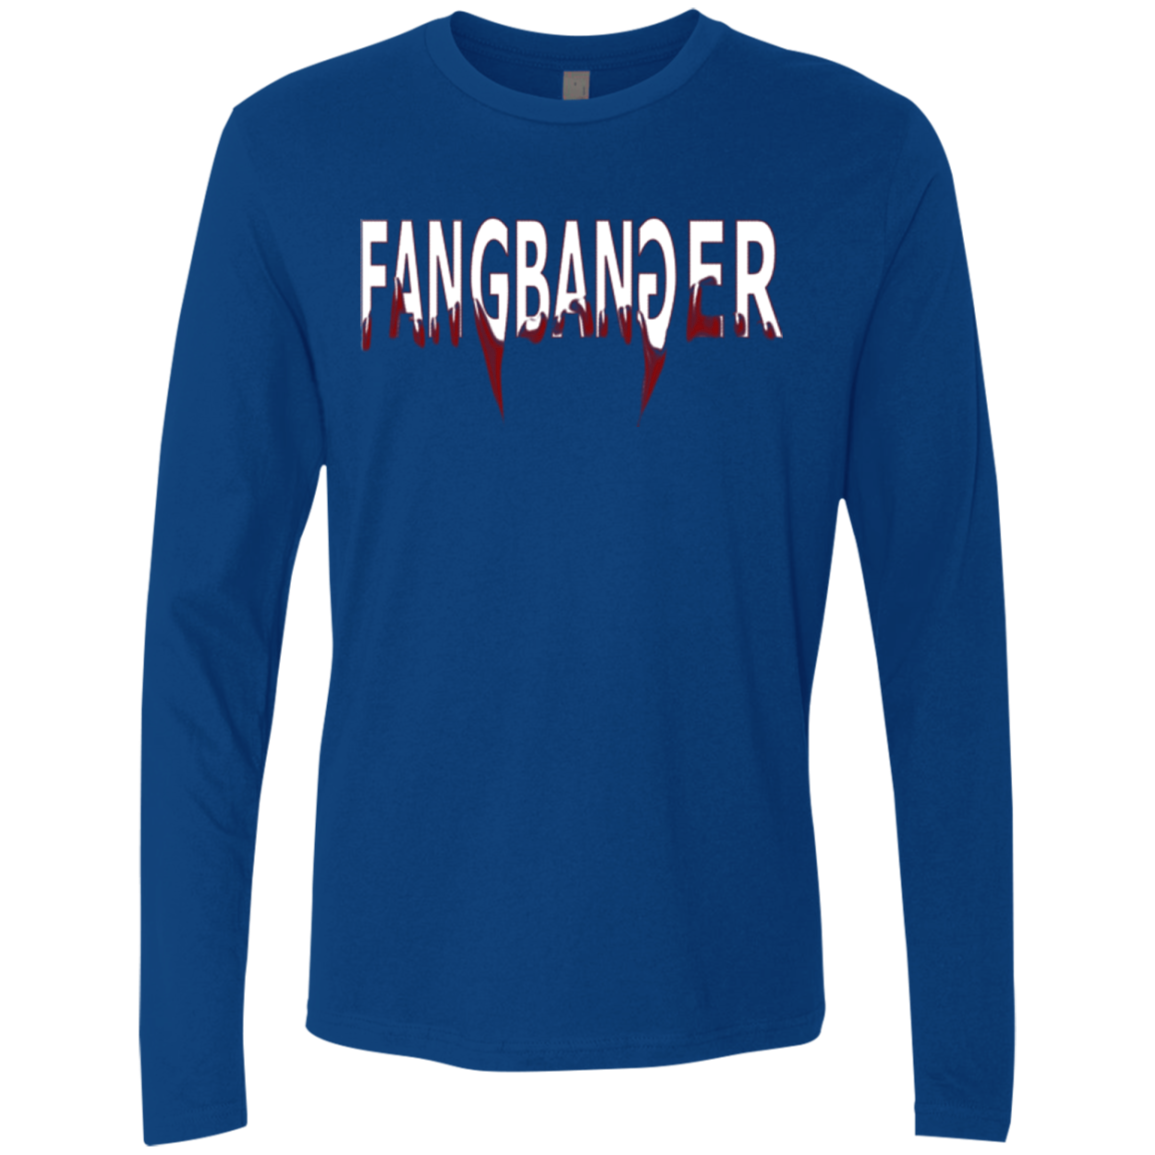 Fangbanger Men's Premium Long Sleeve